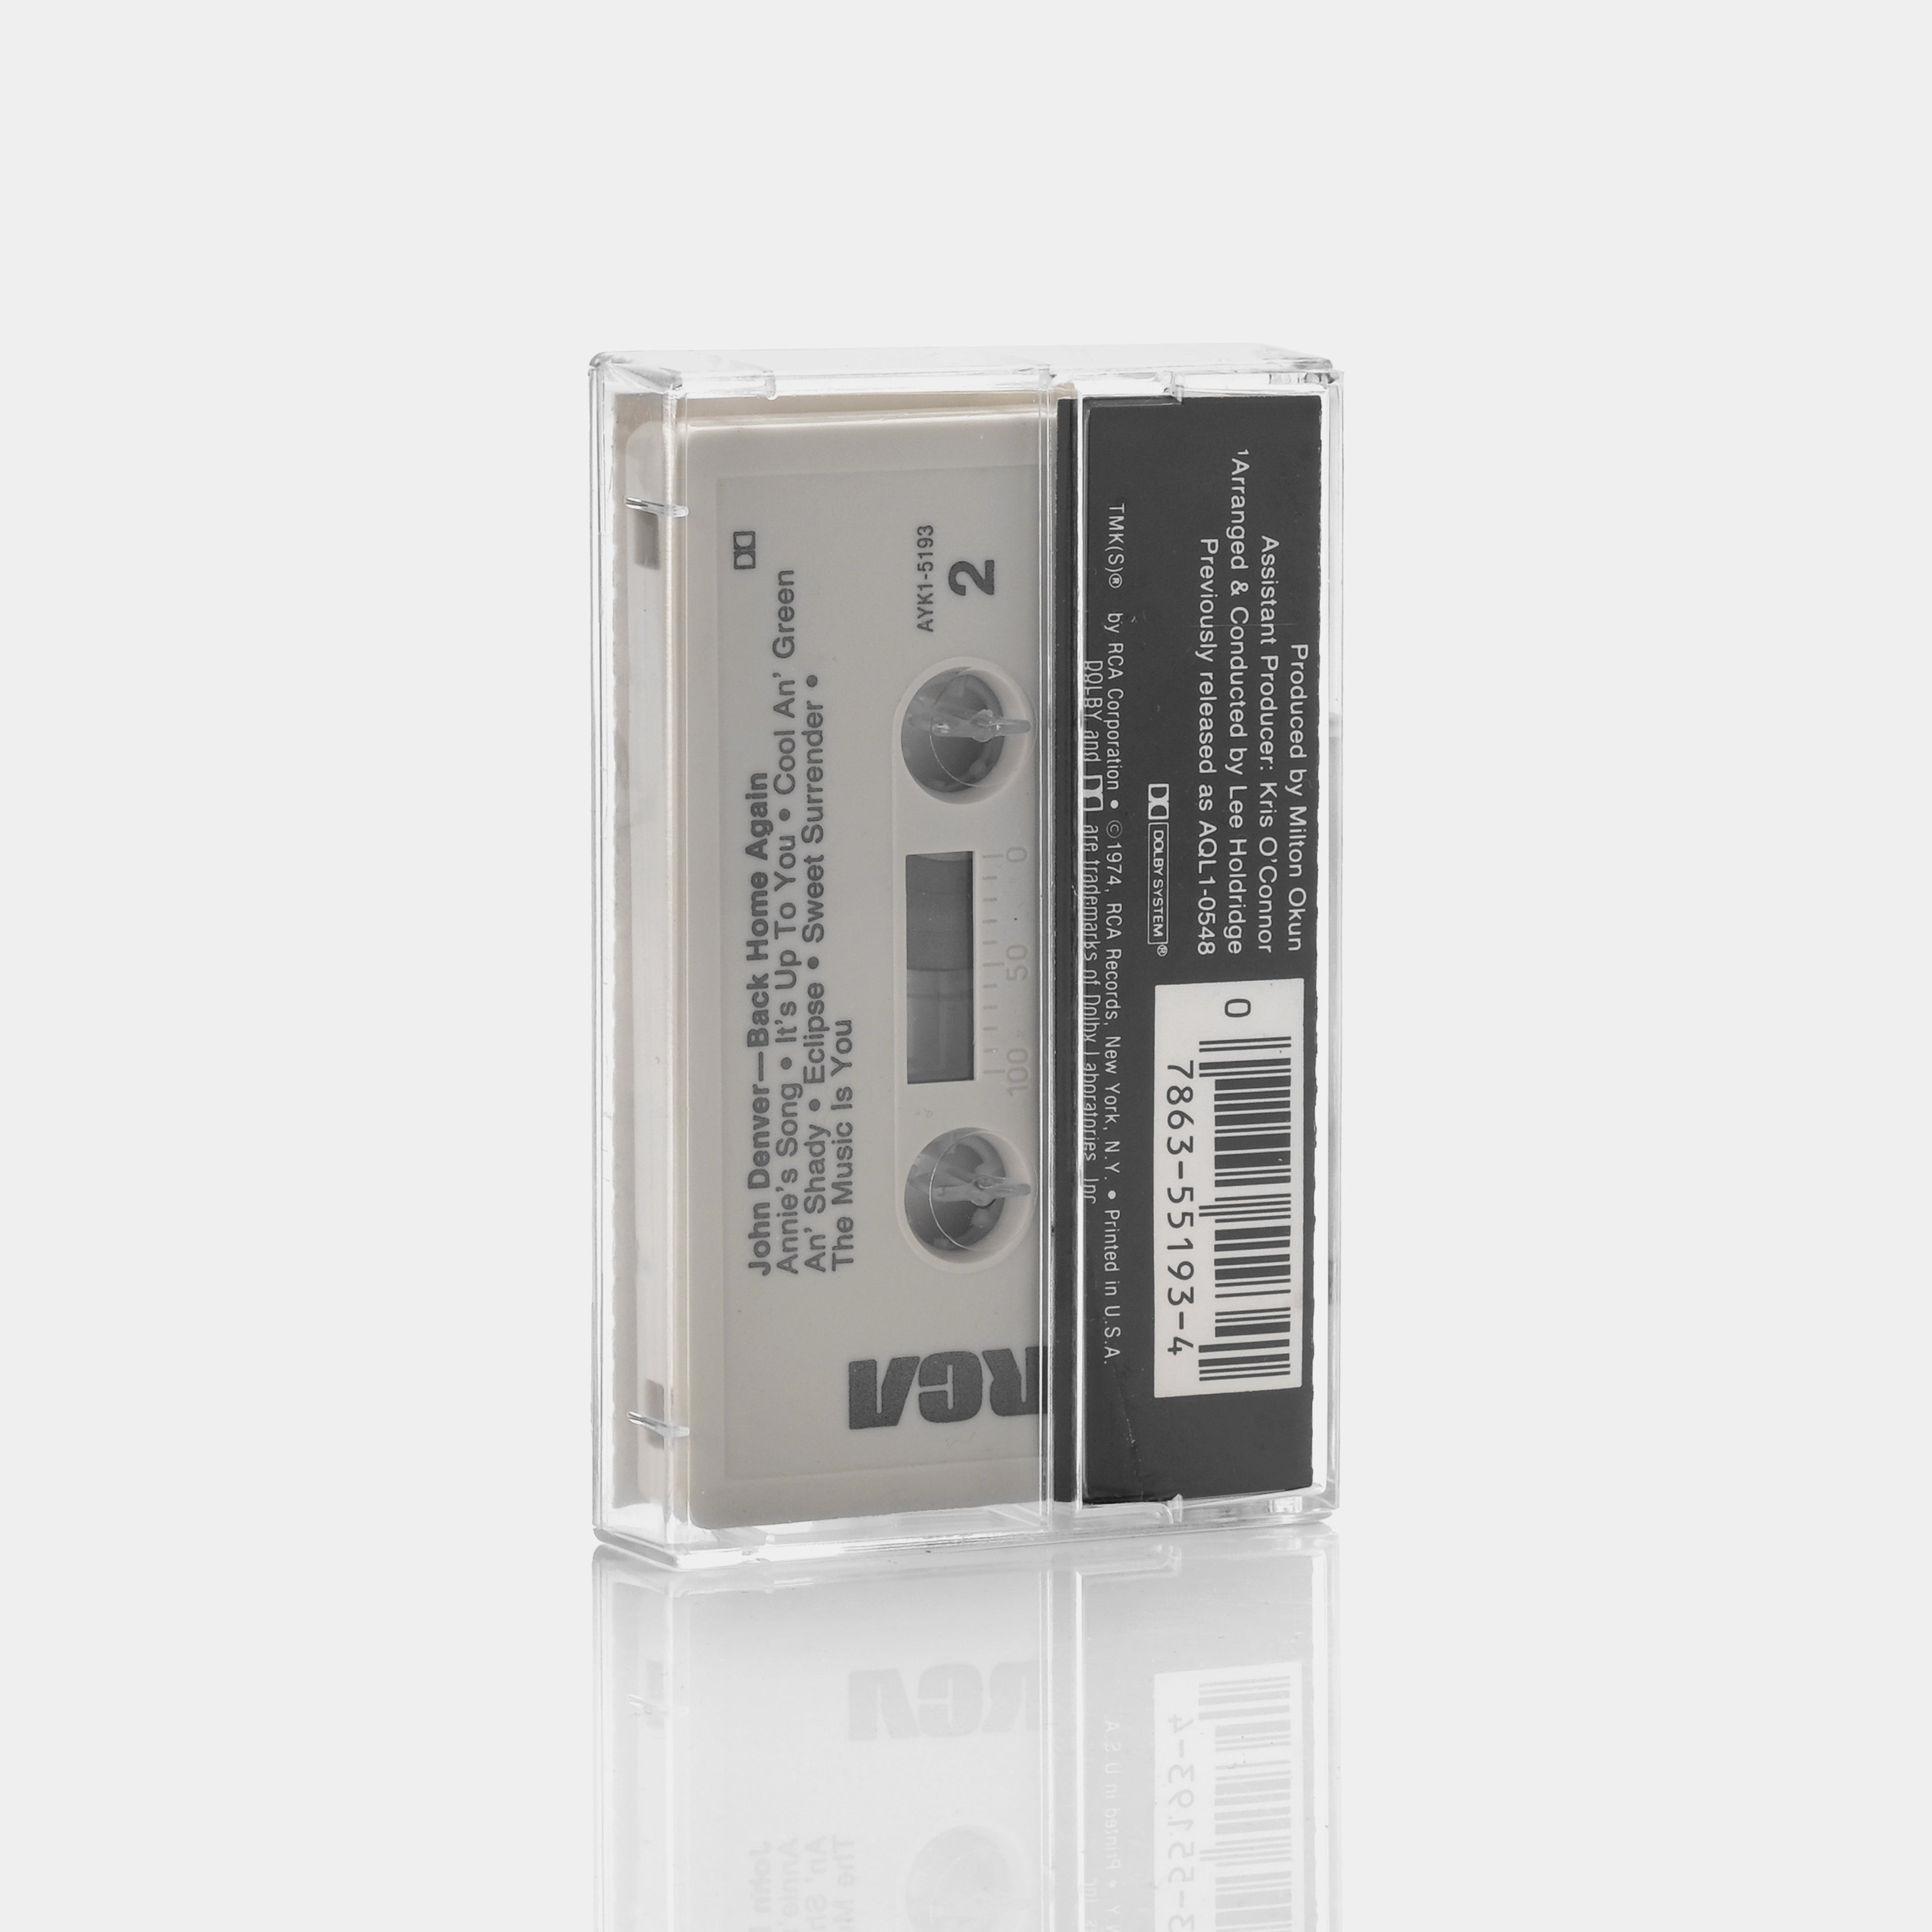 John Denver - Back Home Again Cassette Tape